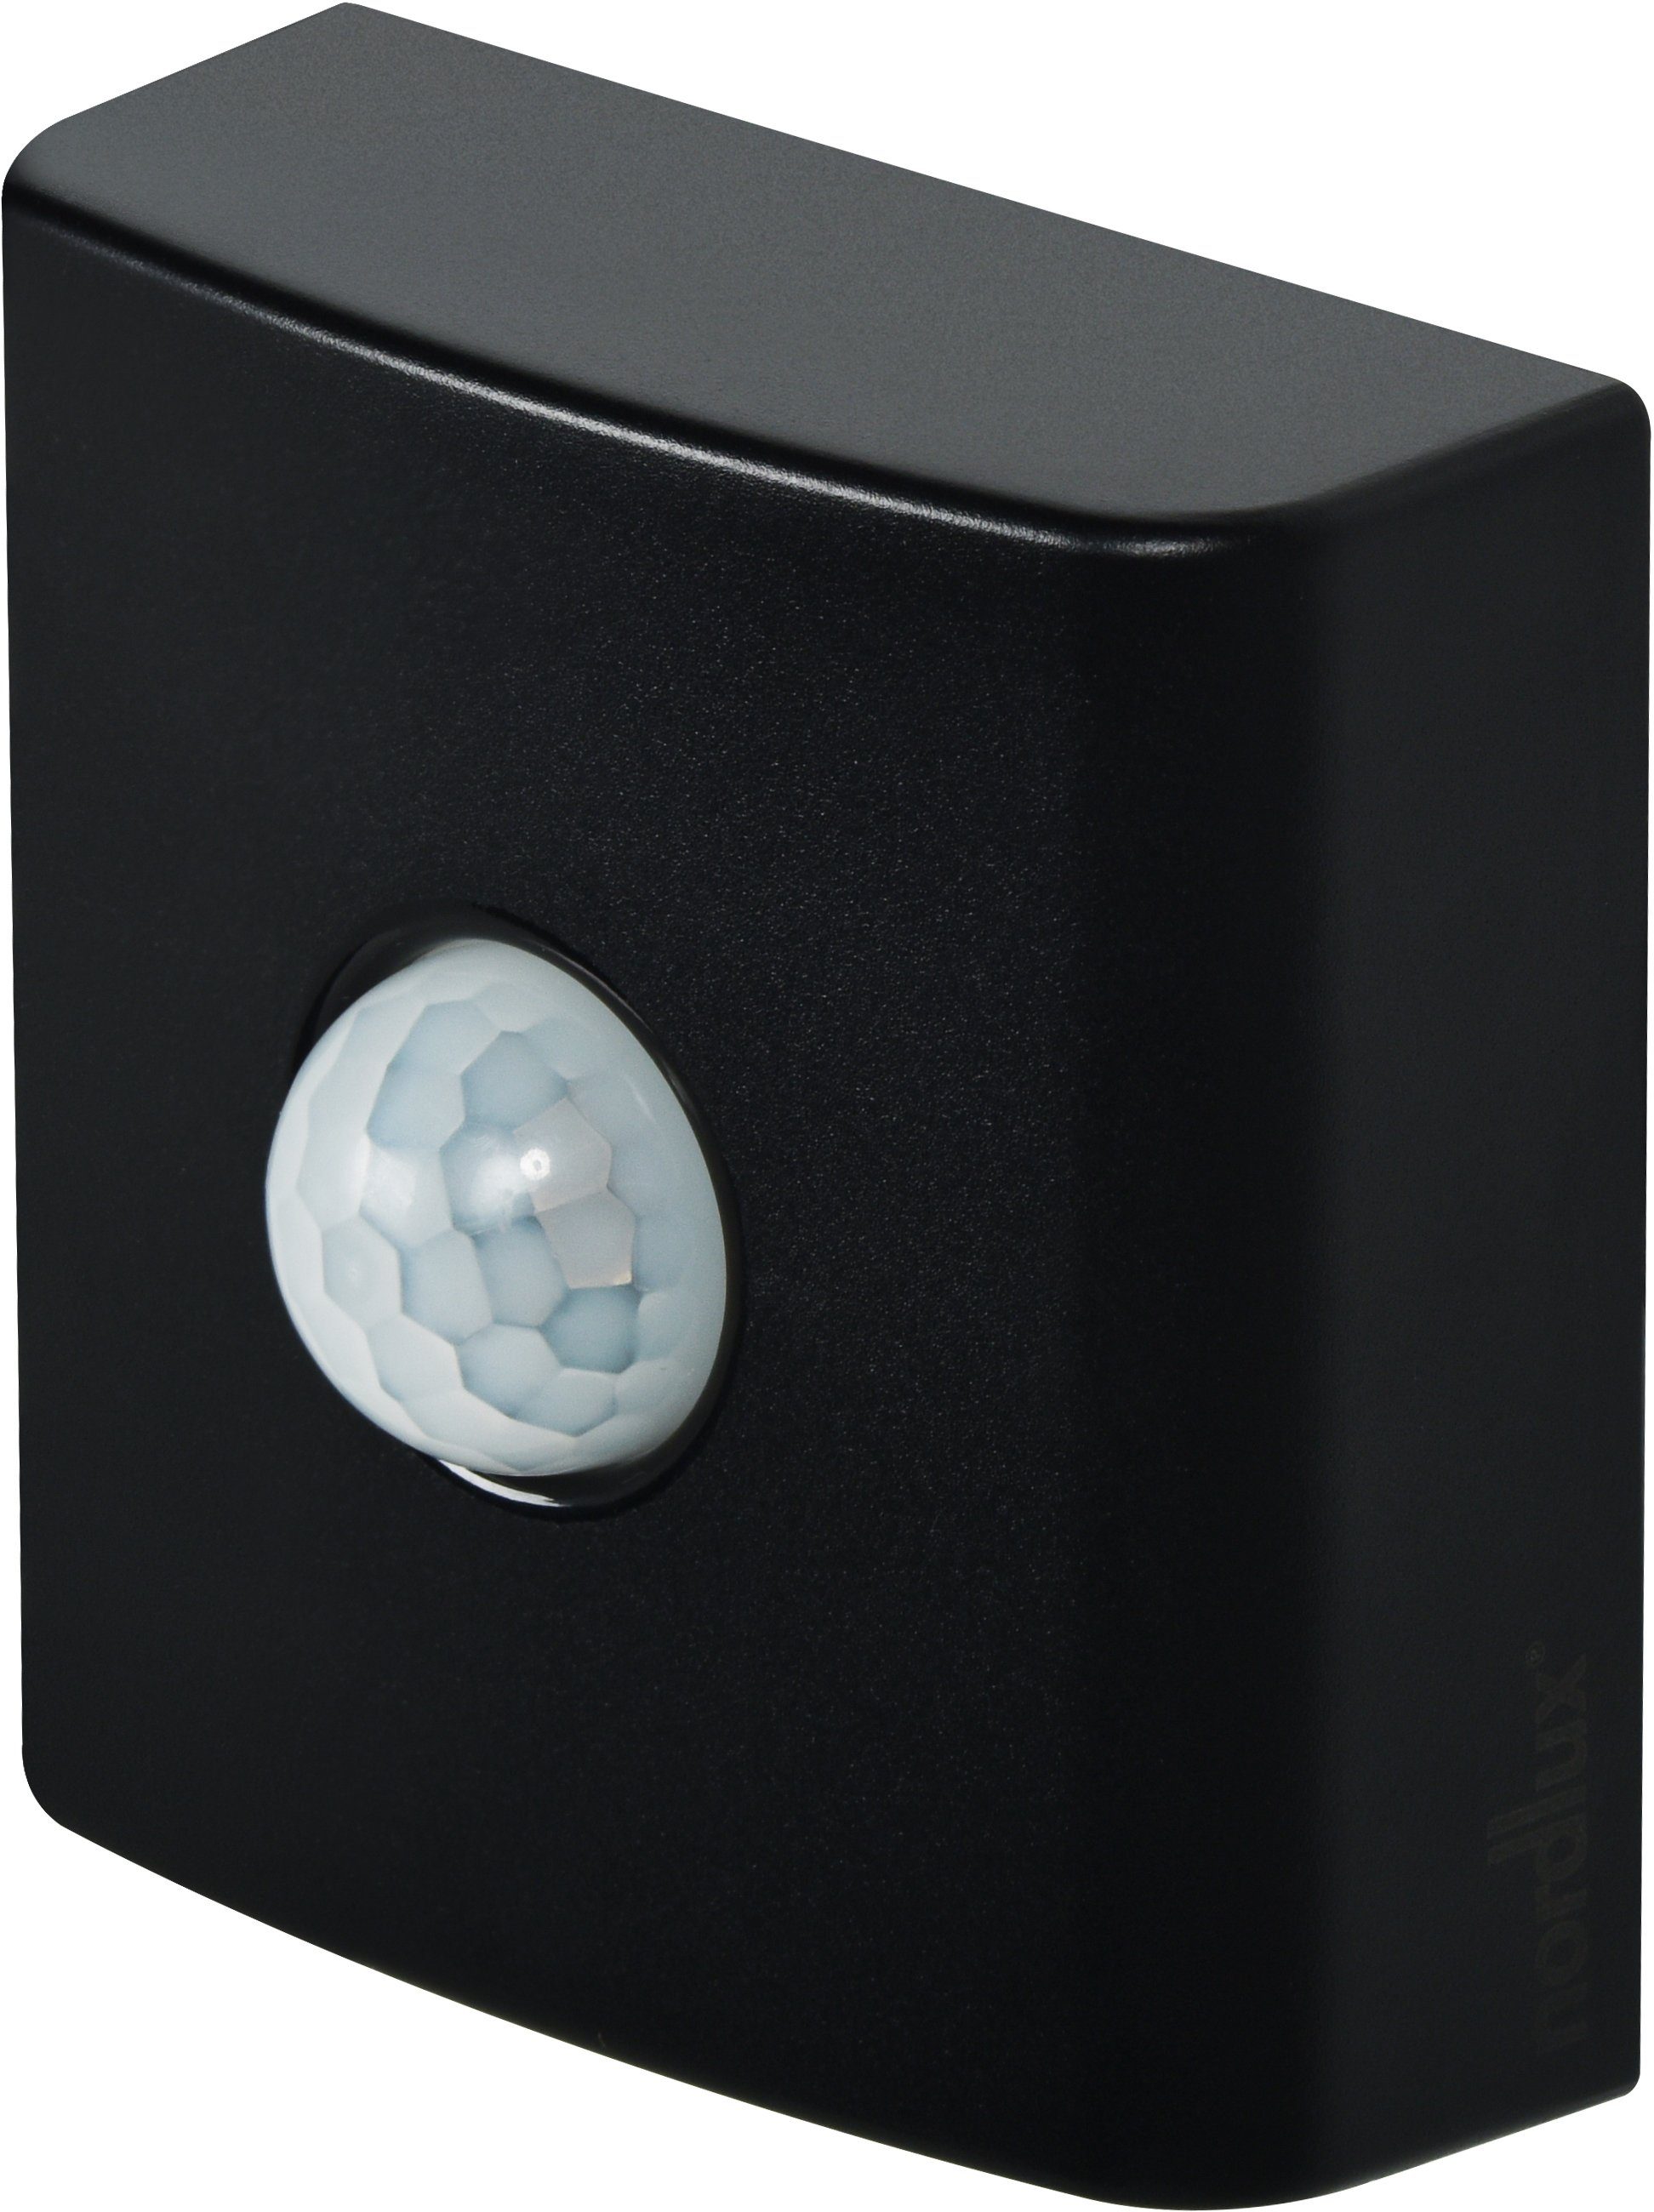 Home Dämmerungsmeldung Mobiler Sensor schwarz Nordlux Smart Bewegungs-, Sensor, Smartlight,